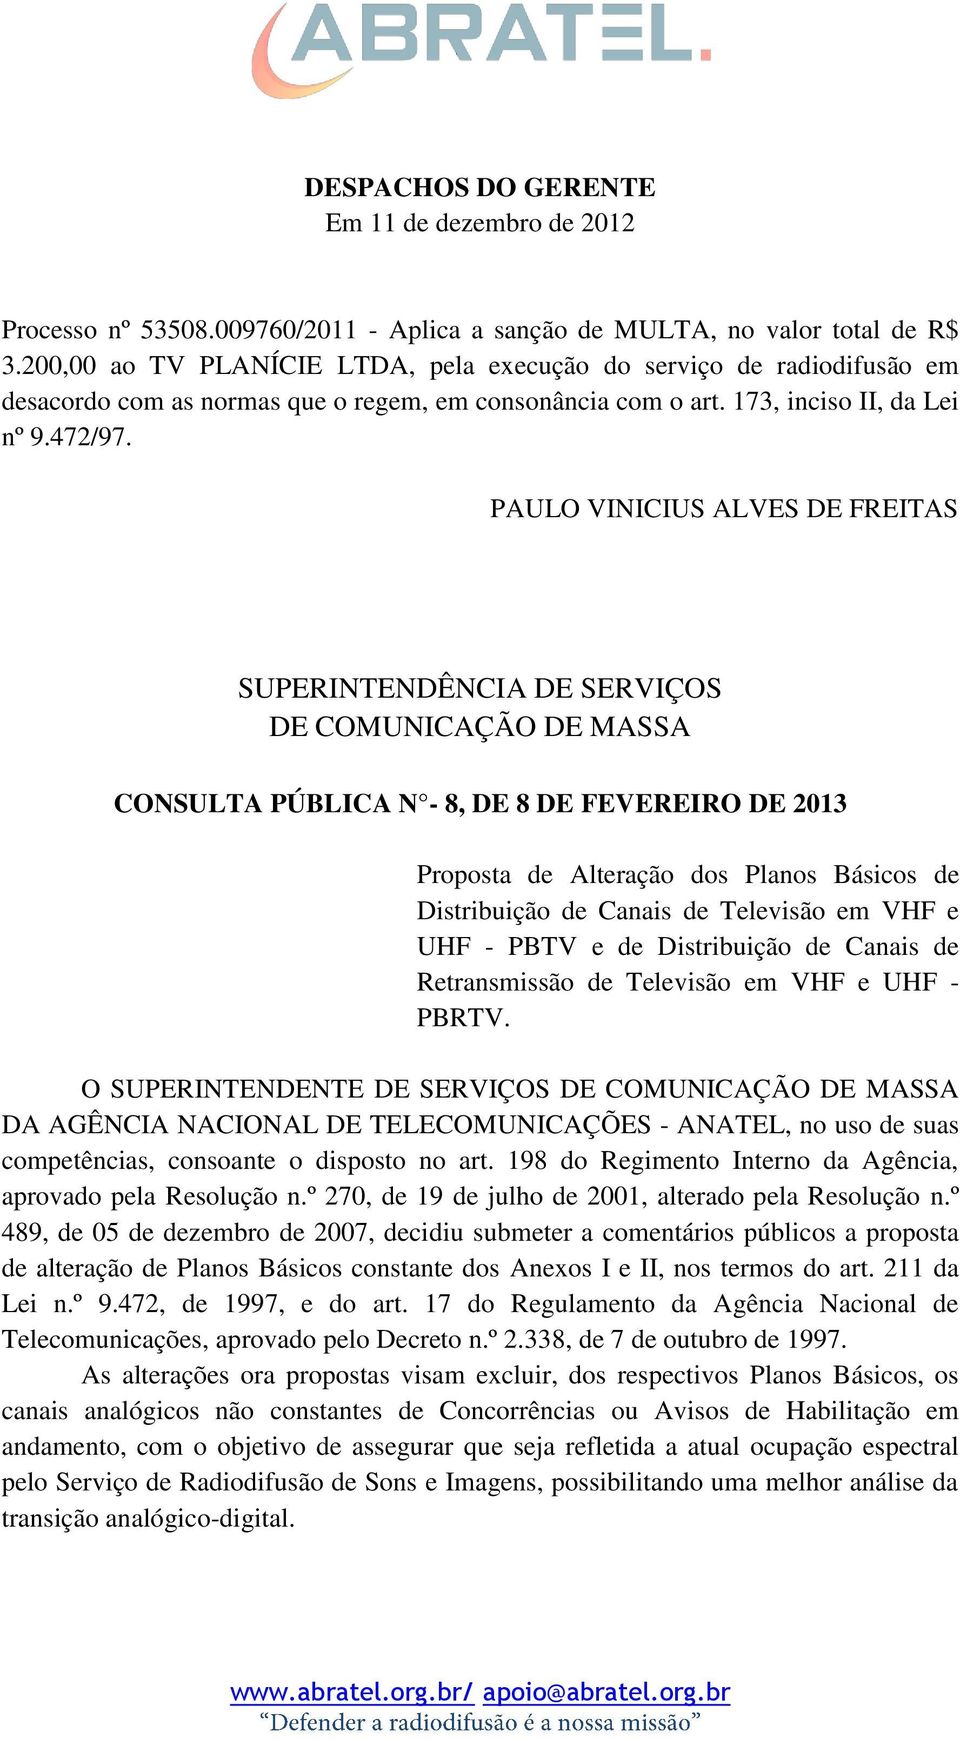 PAULO VINICIUS ALVES DE FREITAS SUPERINTENDÊNCIA DE SERVIÇOS DE COMUNICAÇÃO DE MASSA CONSULTA PÚBLICA N - 8, DE 8 DE FEVEREIRO DE 2013 Proposta de Alteração dos Planos Básicos de Distribuição de